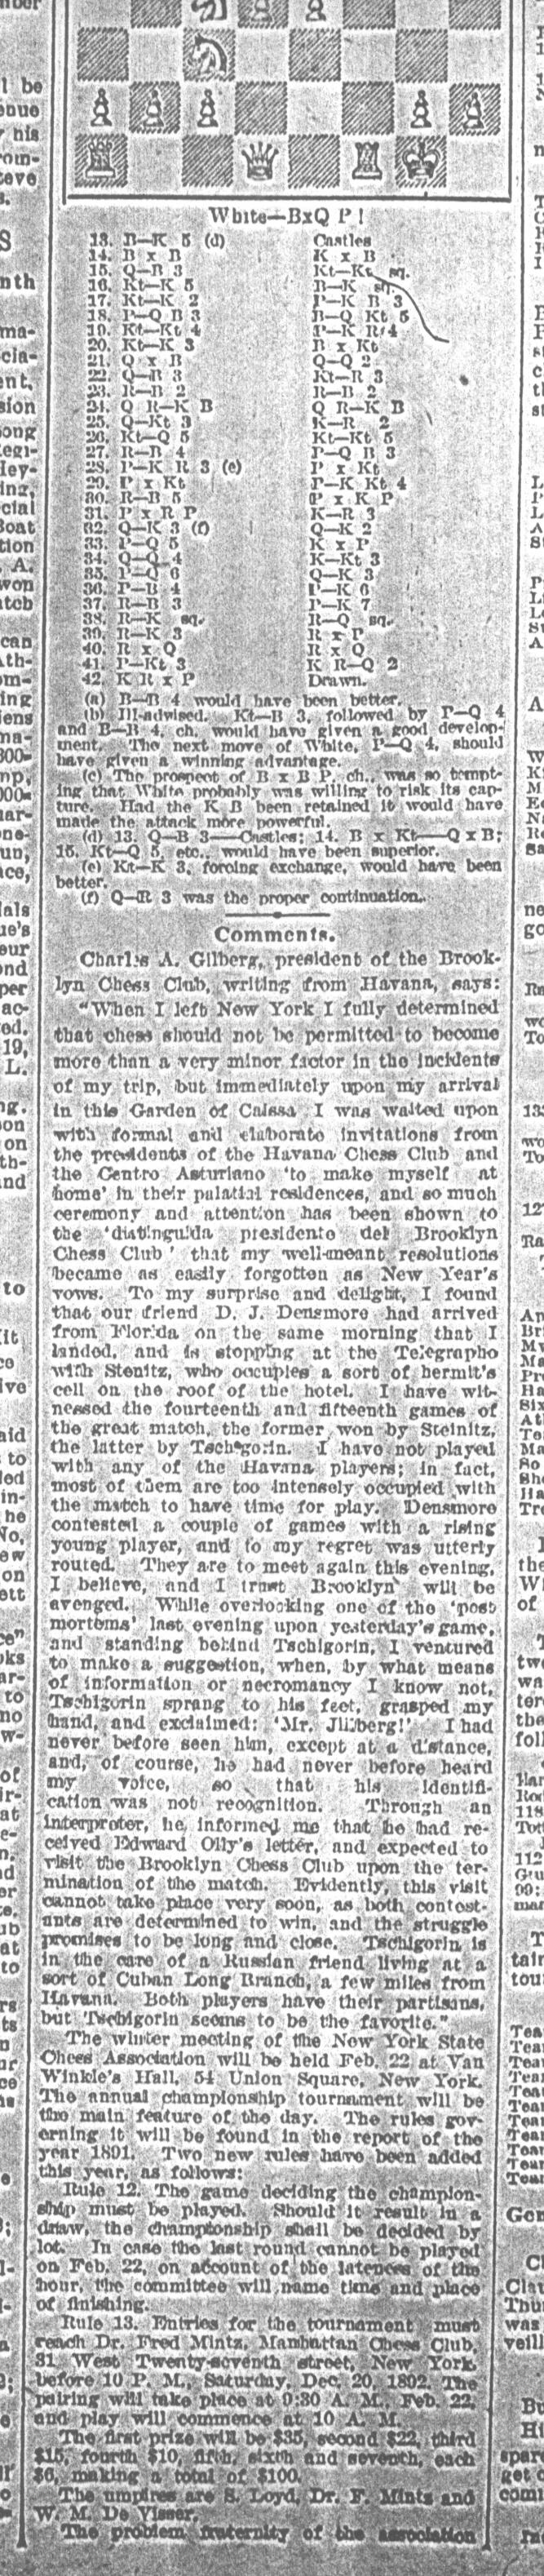 1892.02.13-02 Brooklyn Daily Standard-Union.jpg